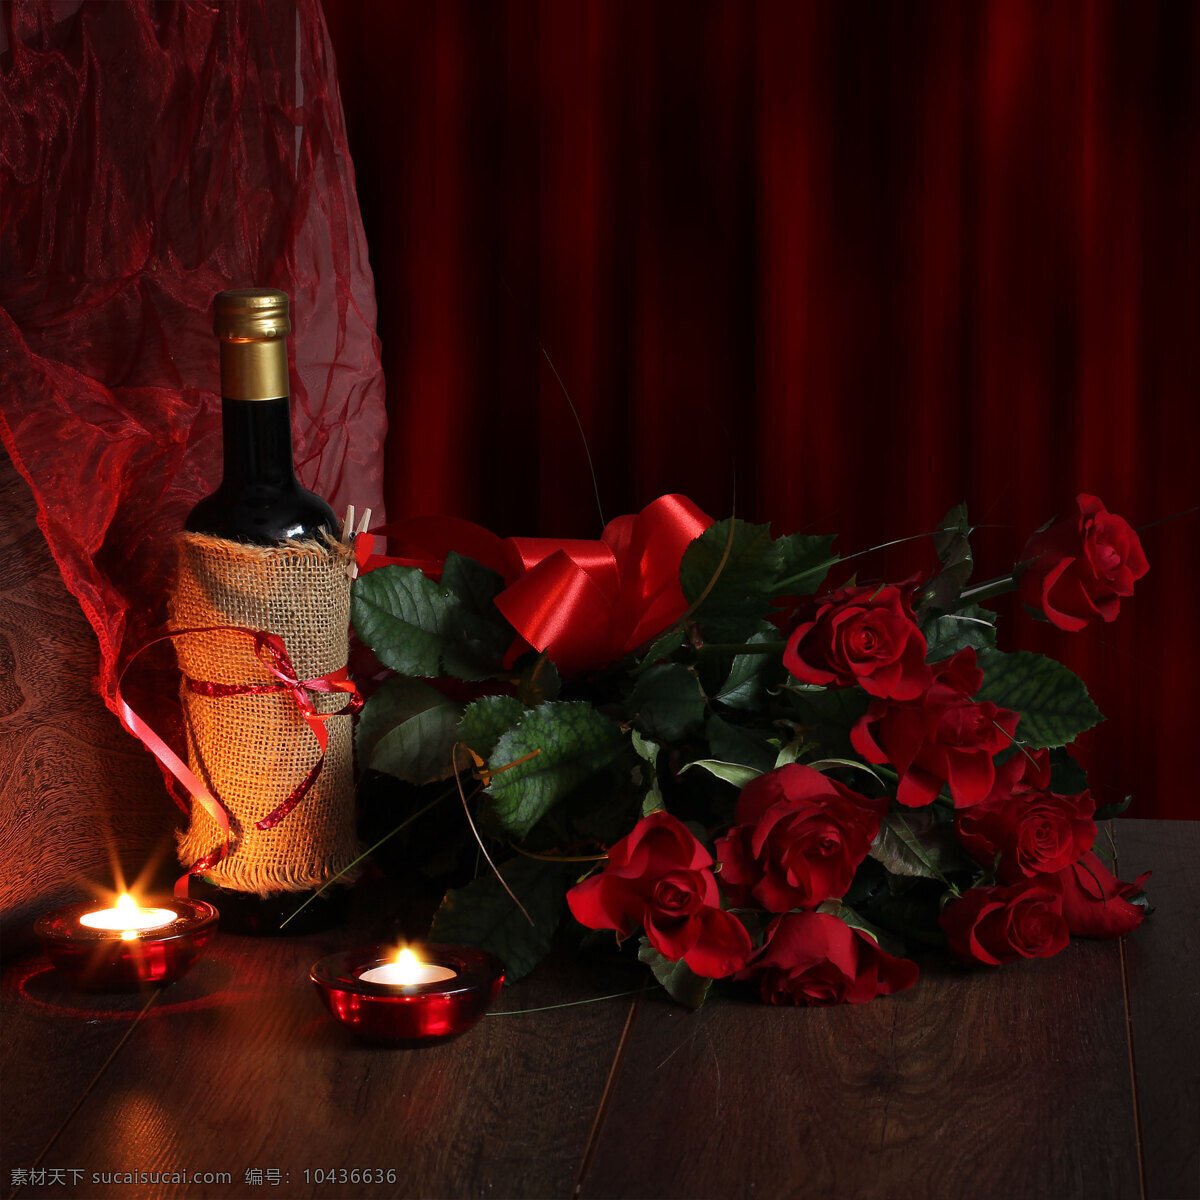 浪漫 红酒 玫瑰花 蜡烛 高清 近景 特写 酒瓶 花朵 鲜花